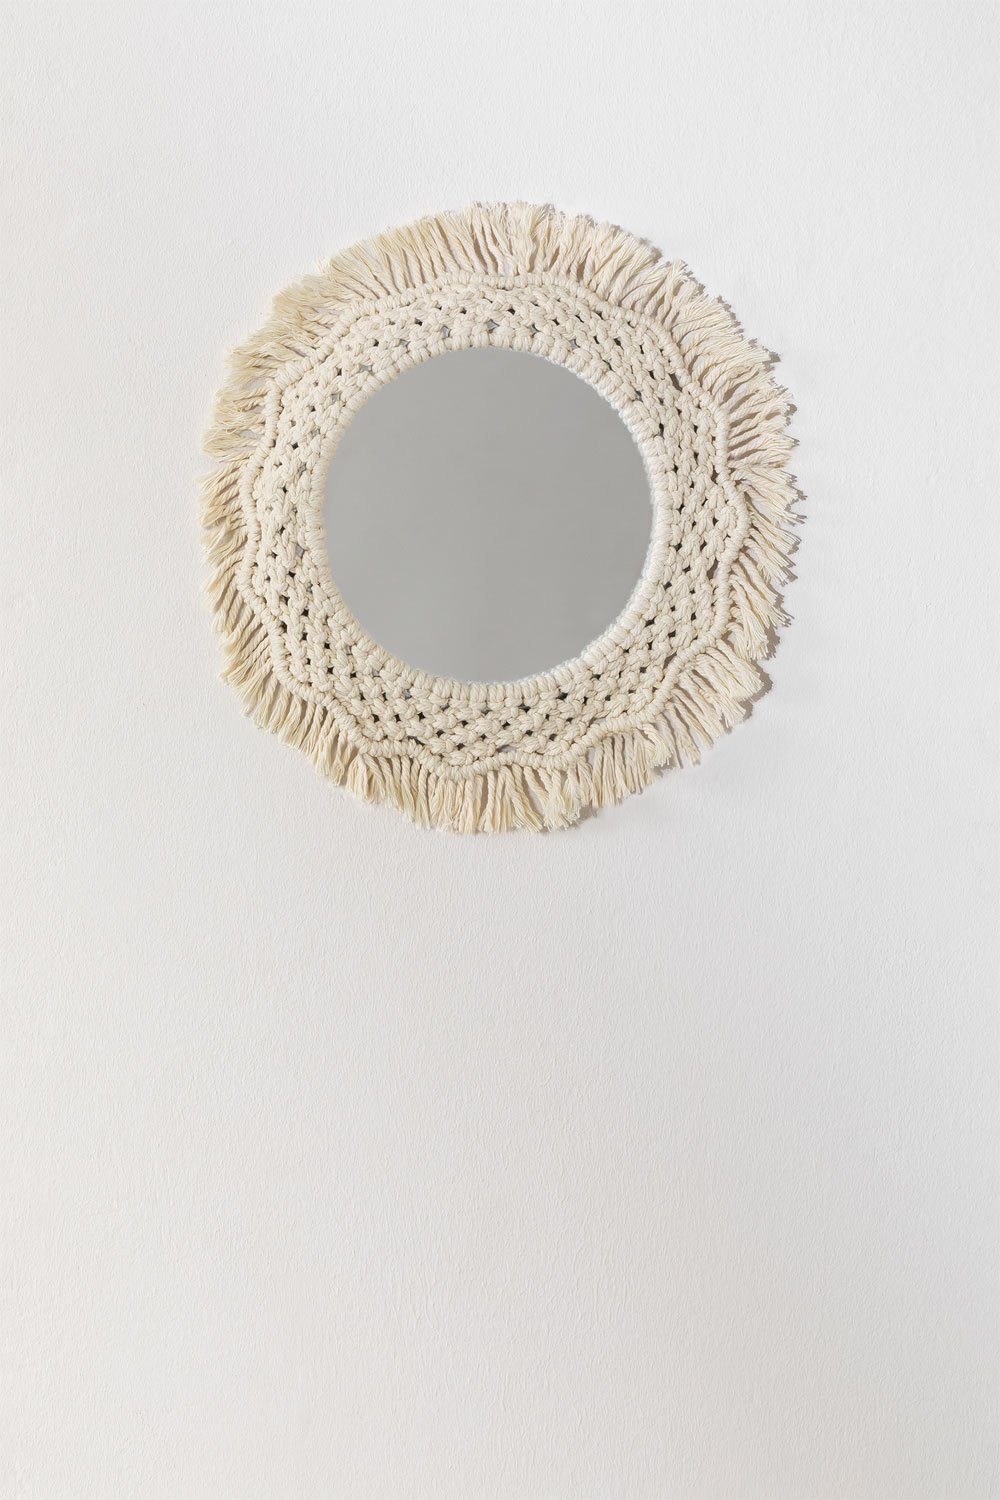 Specchio rotondo da parete in macramè (Ø35 cm) Notel, immagine della galleria 1